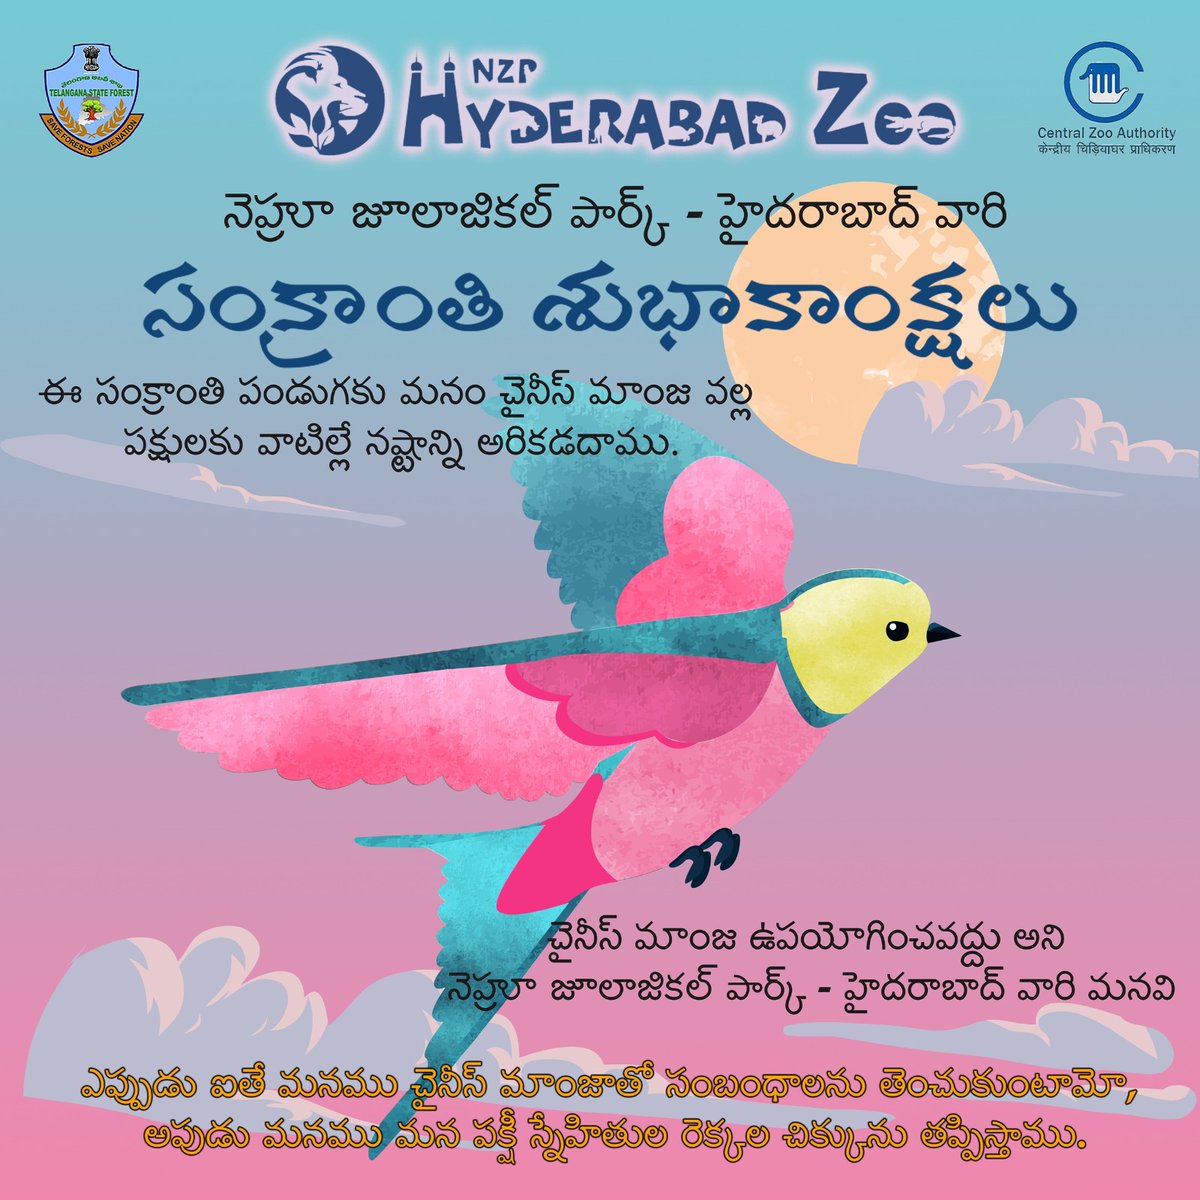 Nehru Zoological Park Hyderabad wishes you #HappySankranthi @dobriyalrm @HarithaHaram @pargaien @KMuraliSurekha